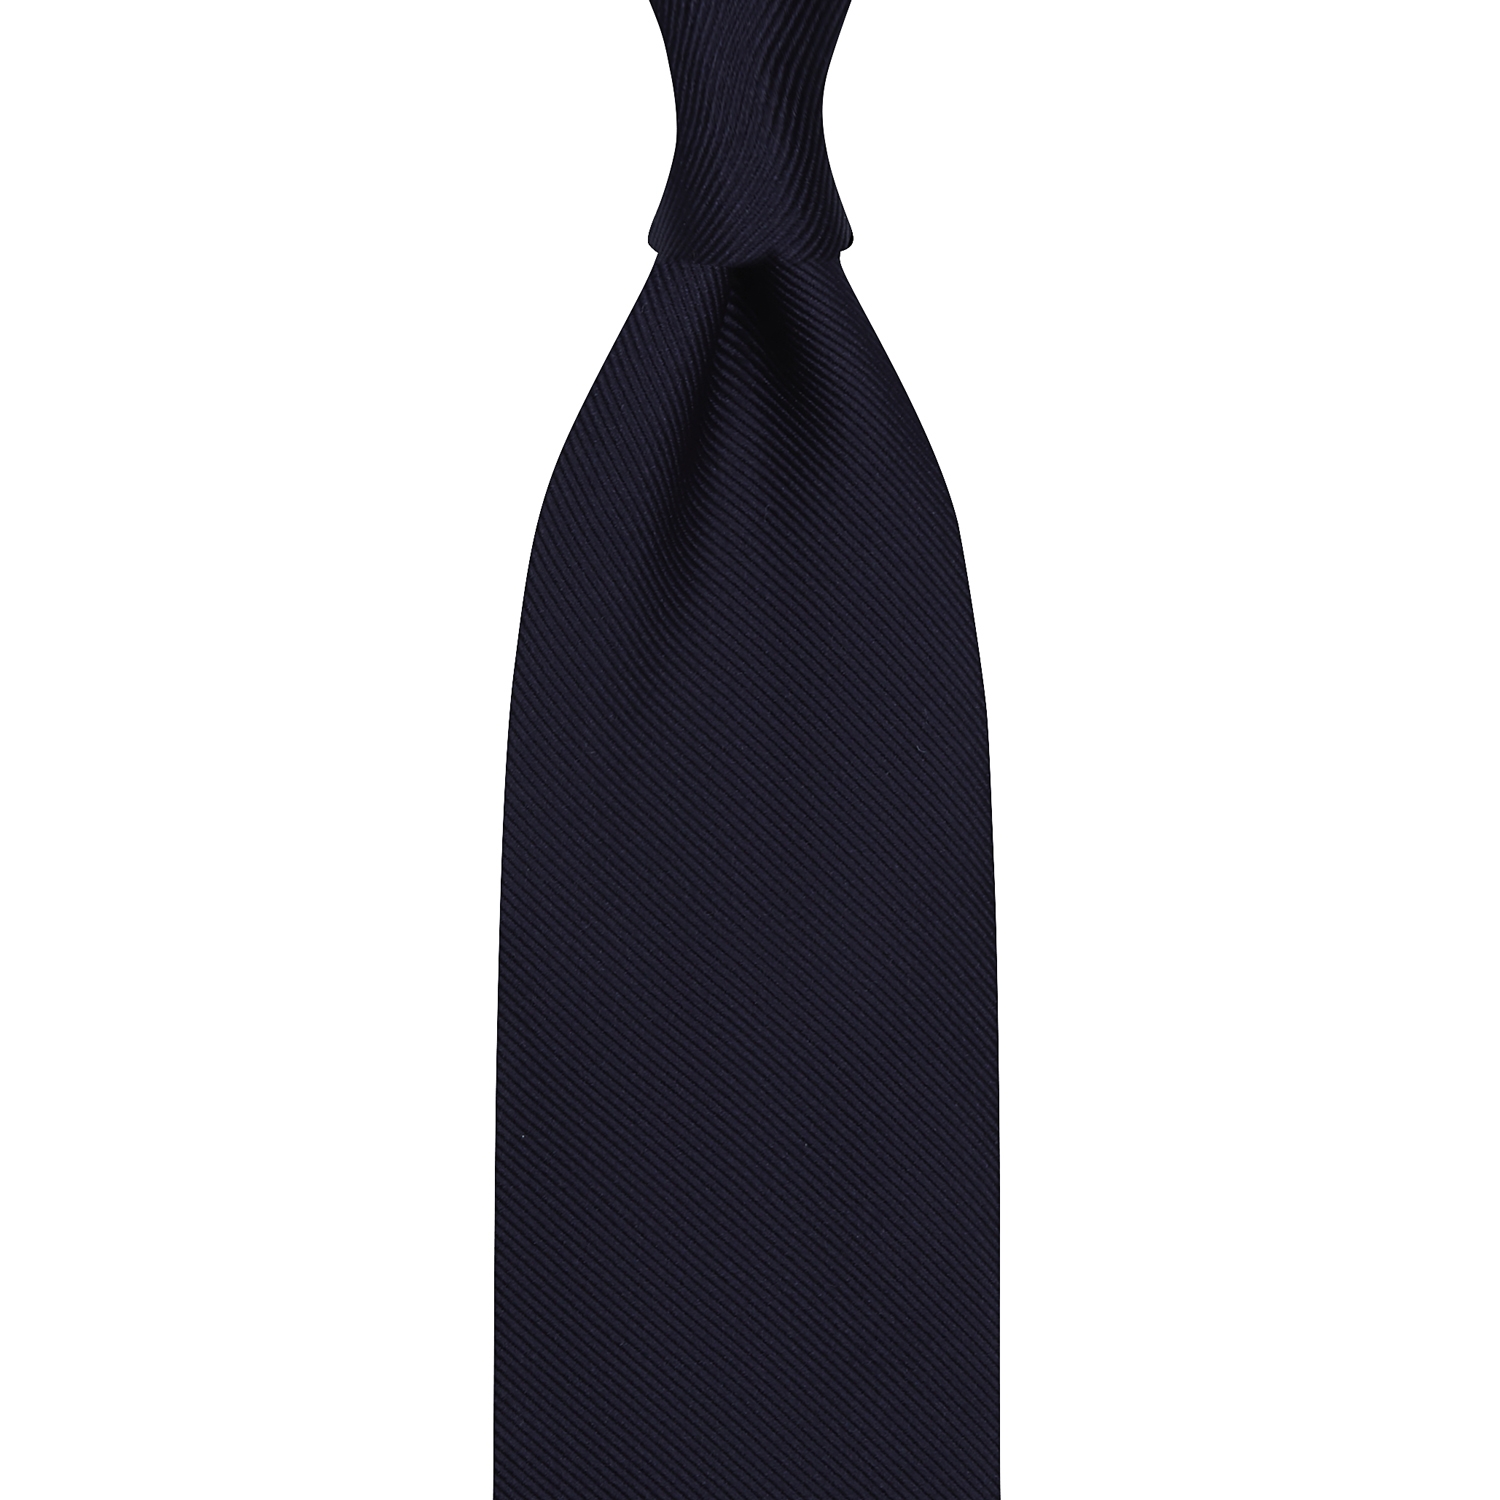 cravate en jacquard de soie - Bleu marine